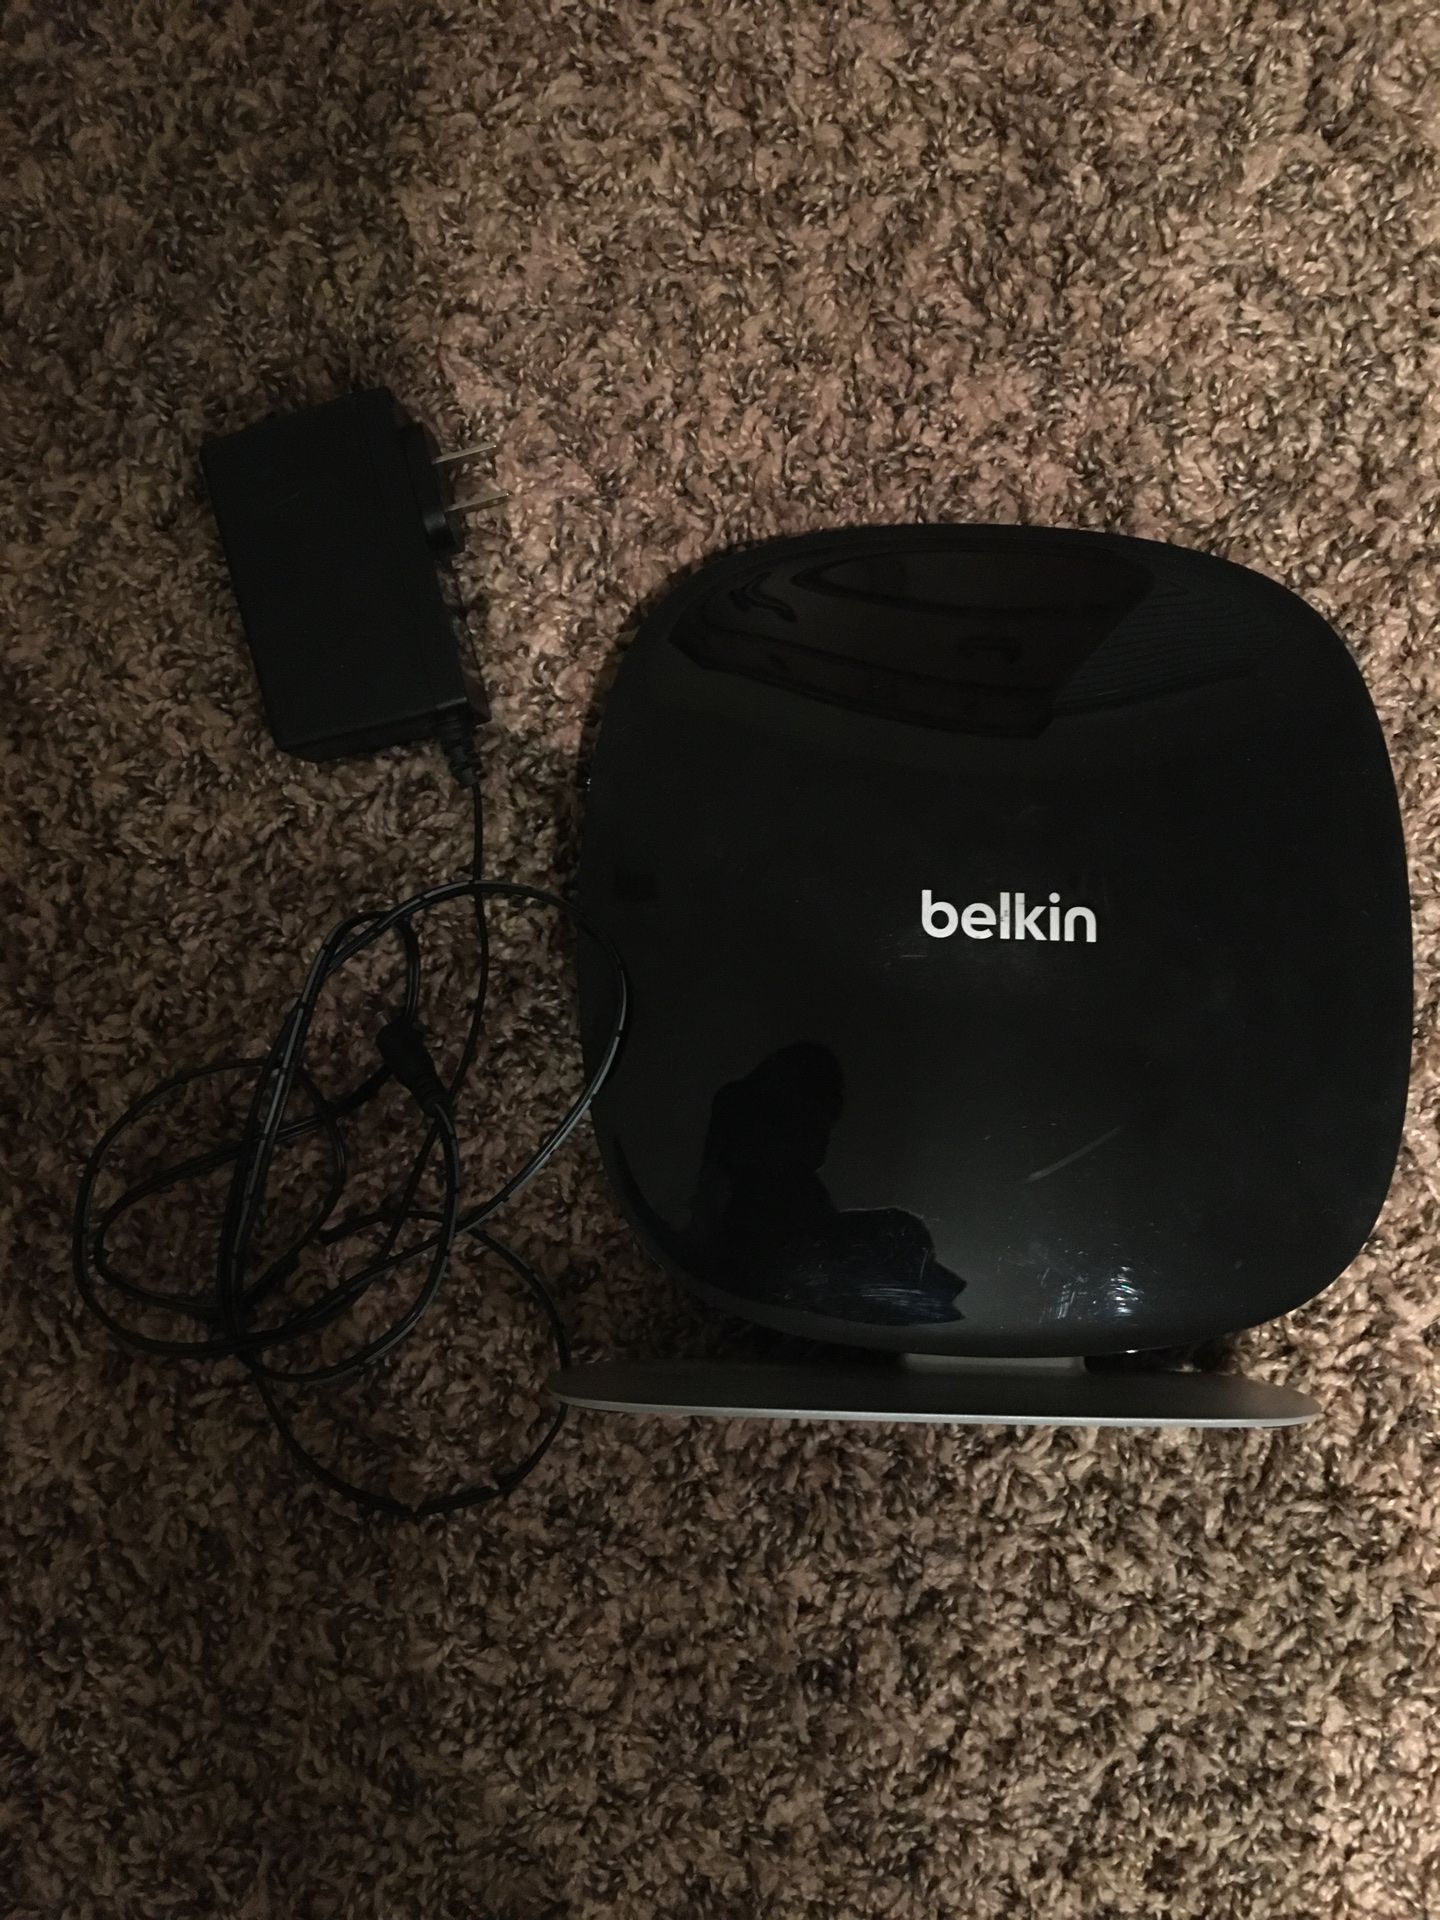 Bellkin Wifi Router